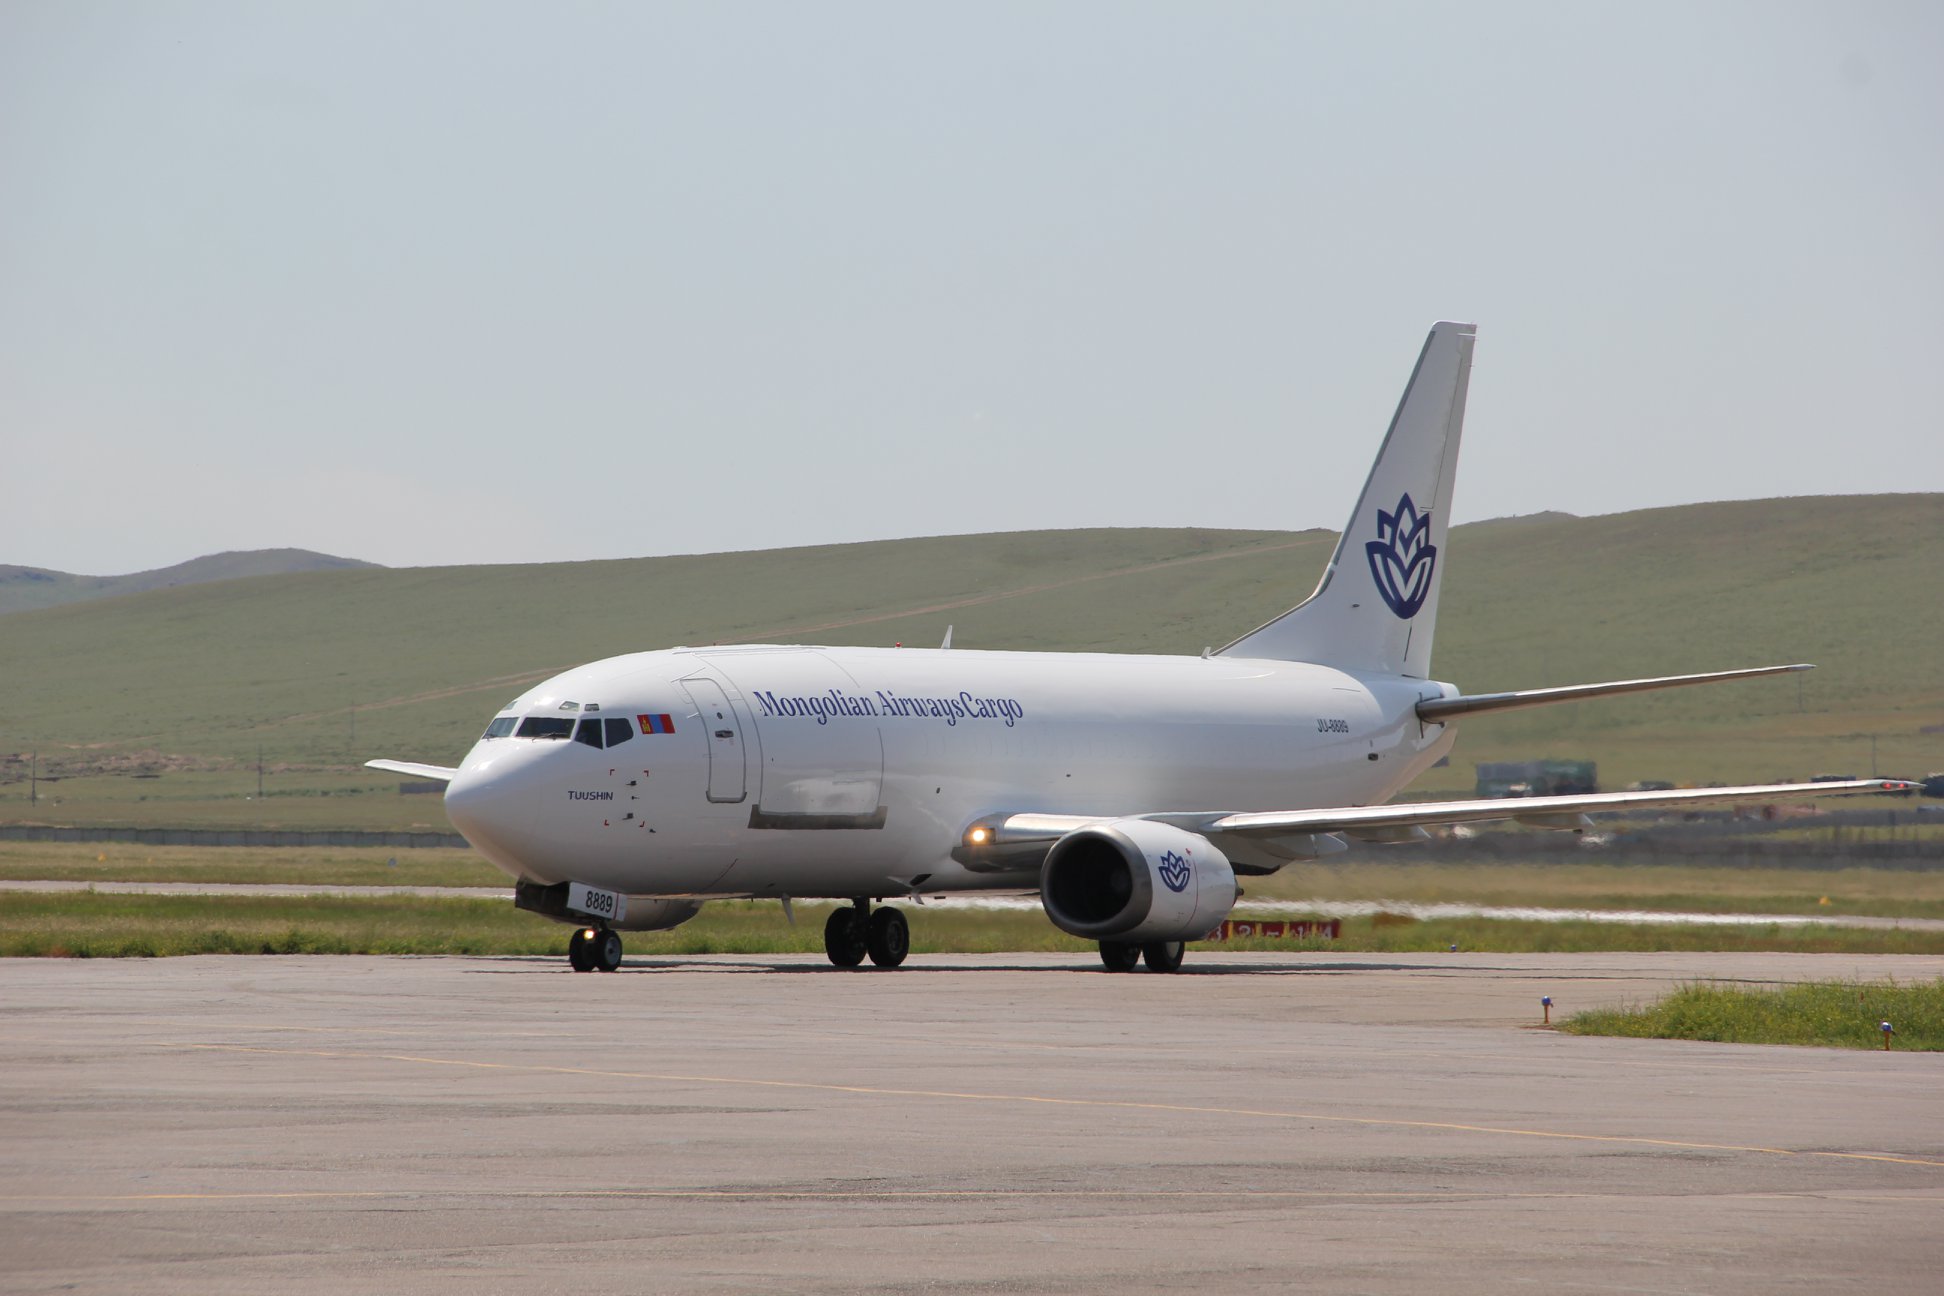 A Mongolian Airways Cargo 737-300F. Photo MCAA